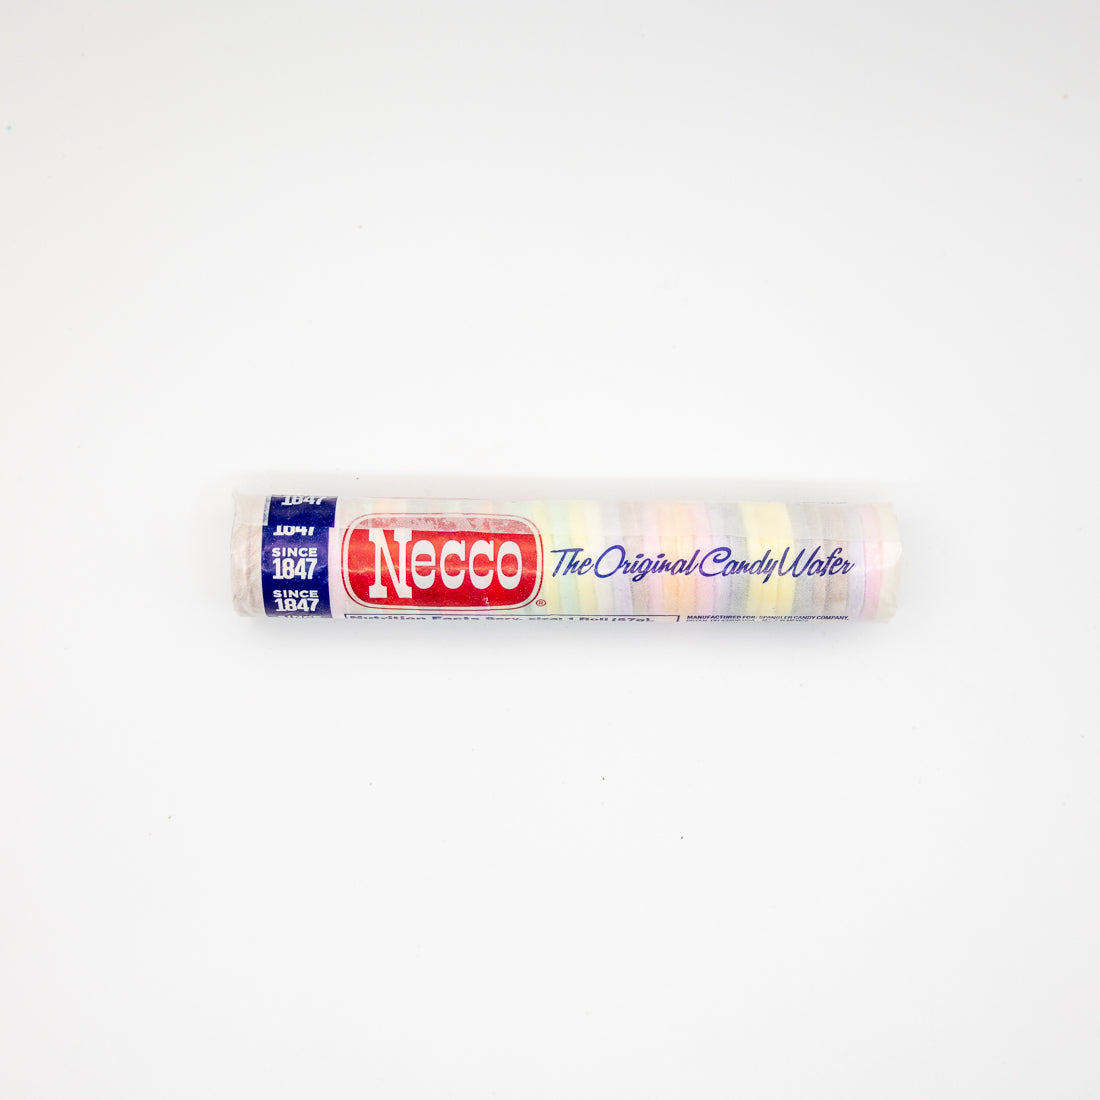 Necco Original Candy Wafer